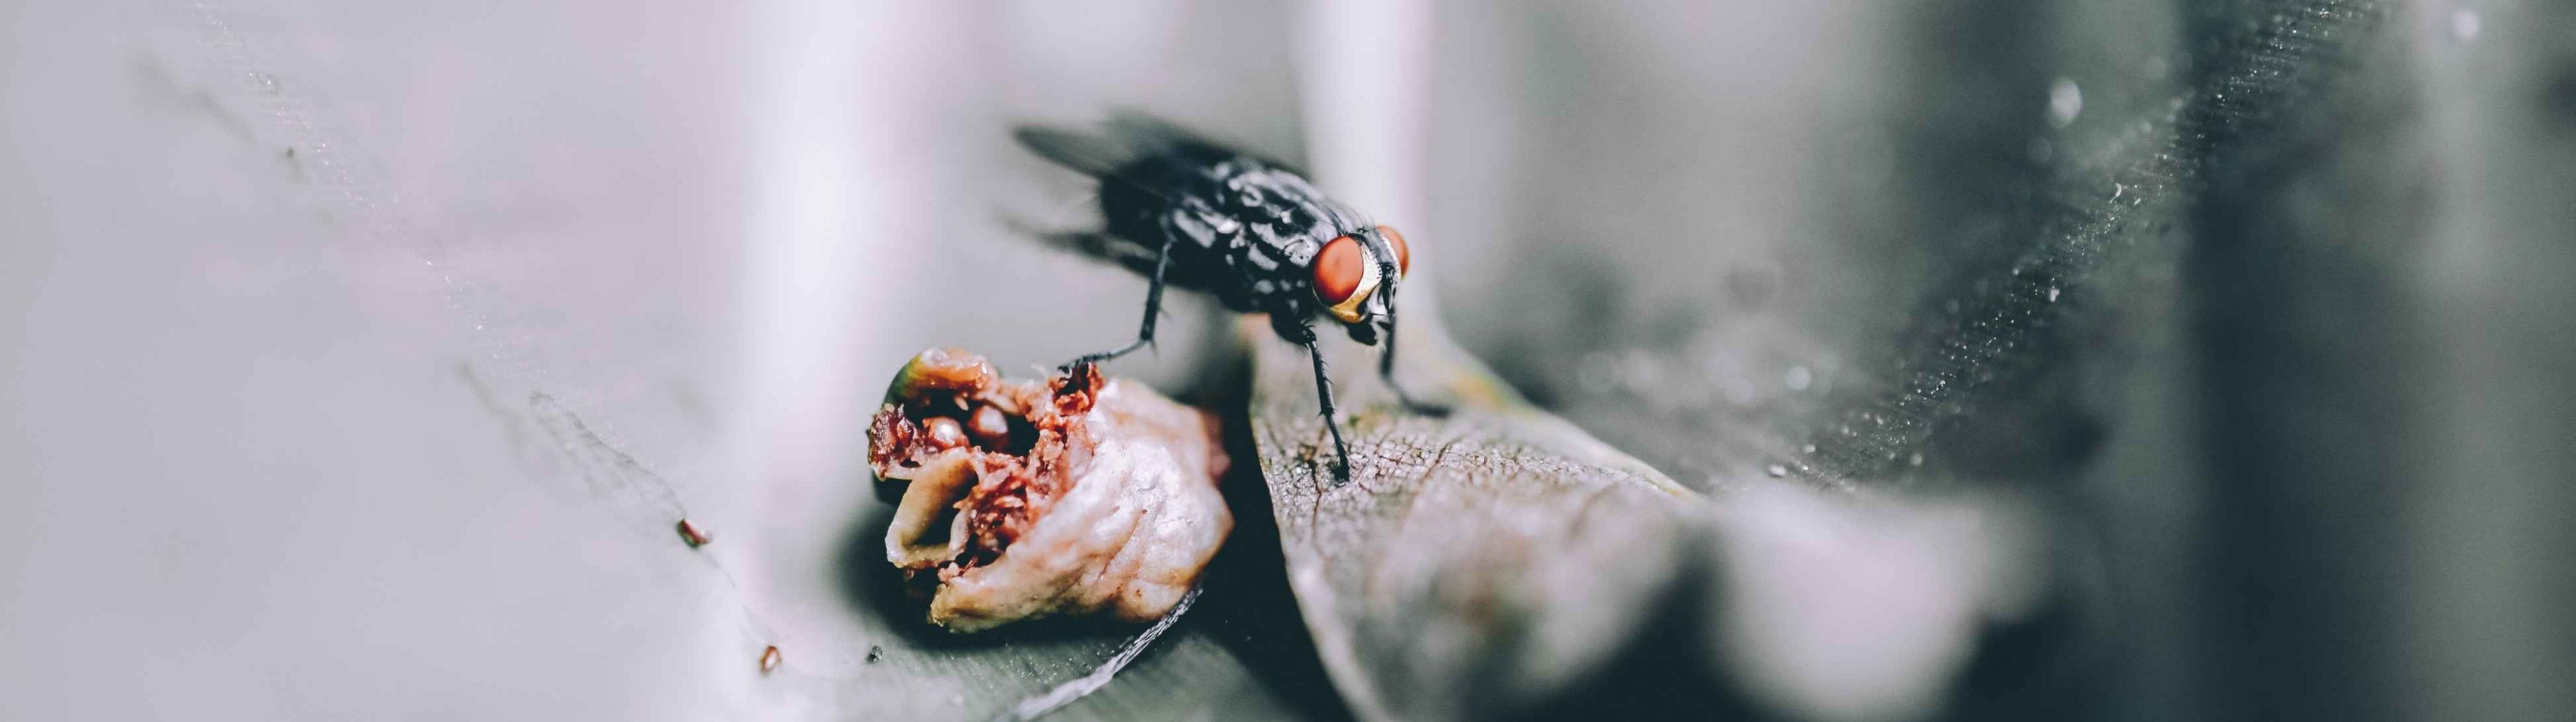 La mordedura de la mosca negra podría transmitir distintos virus